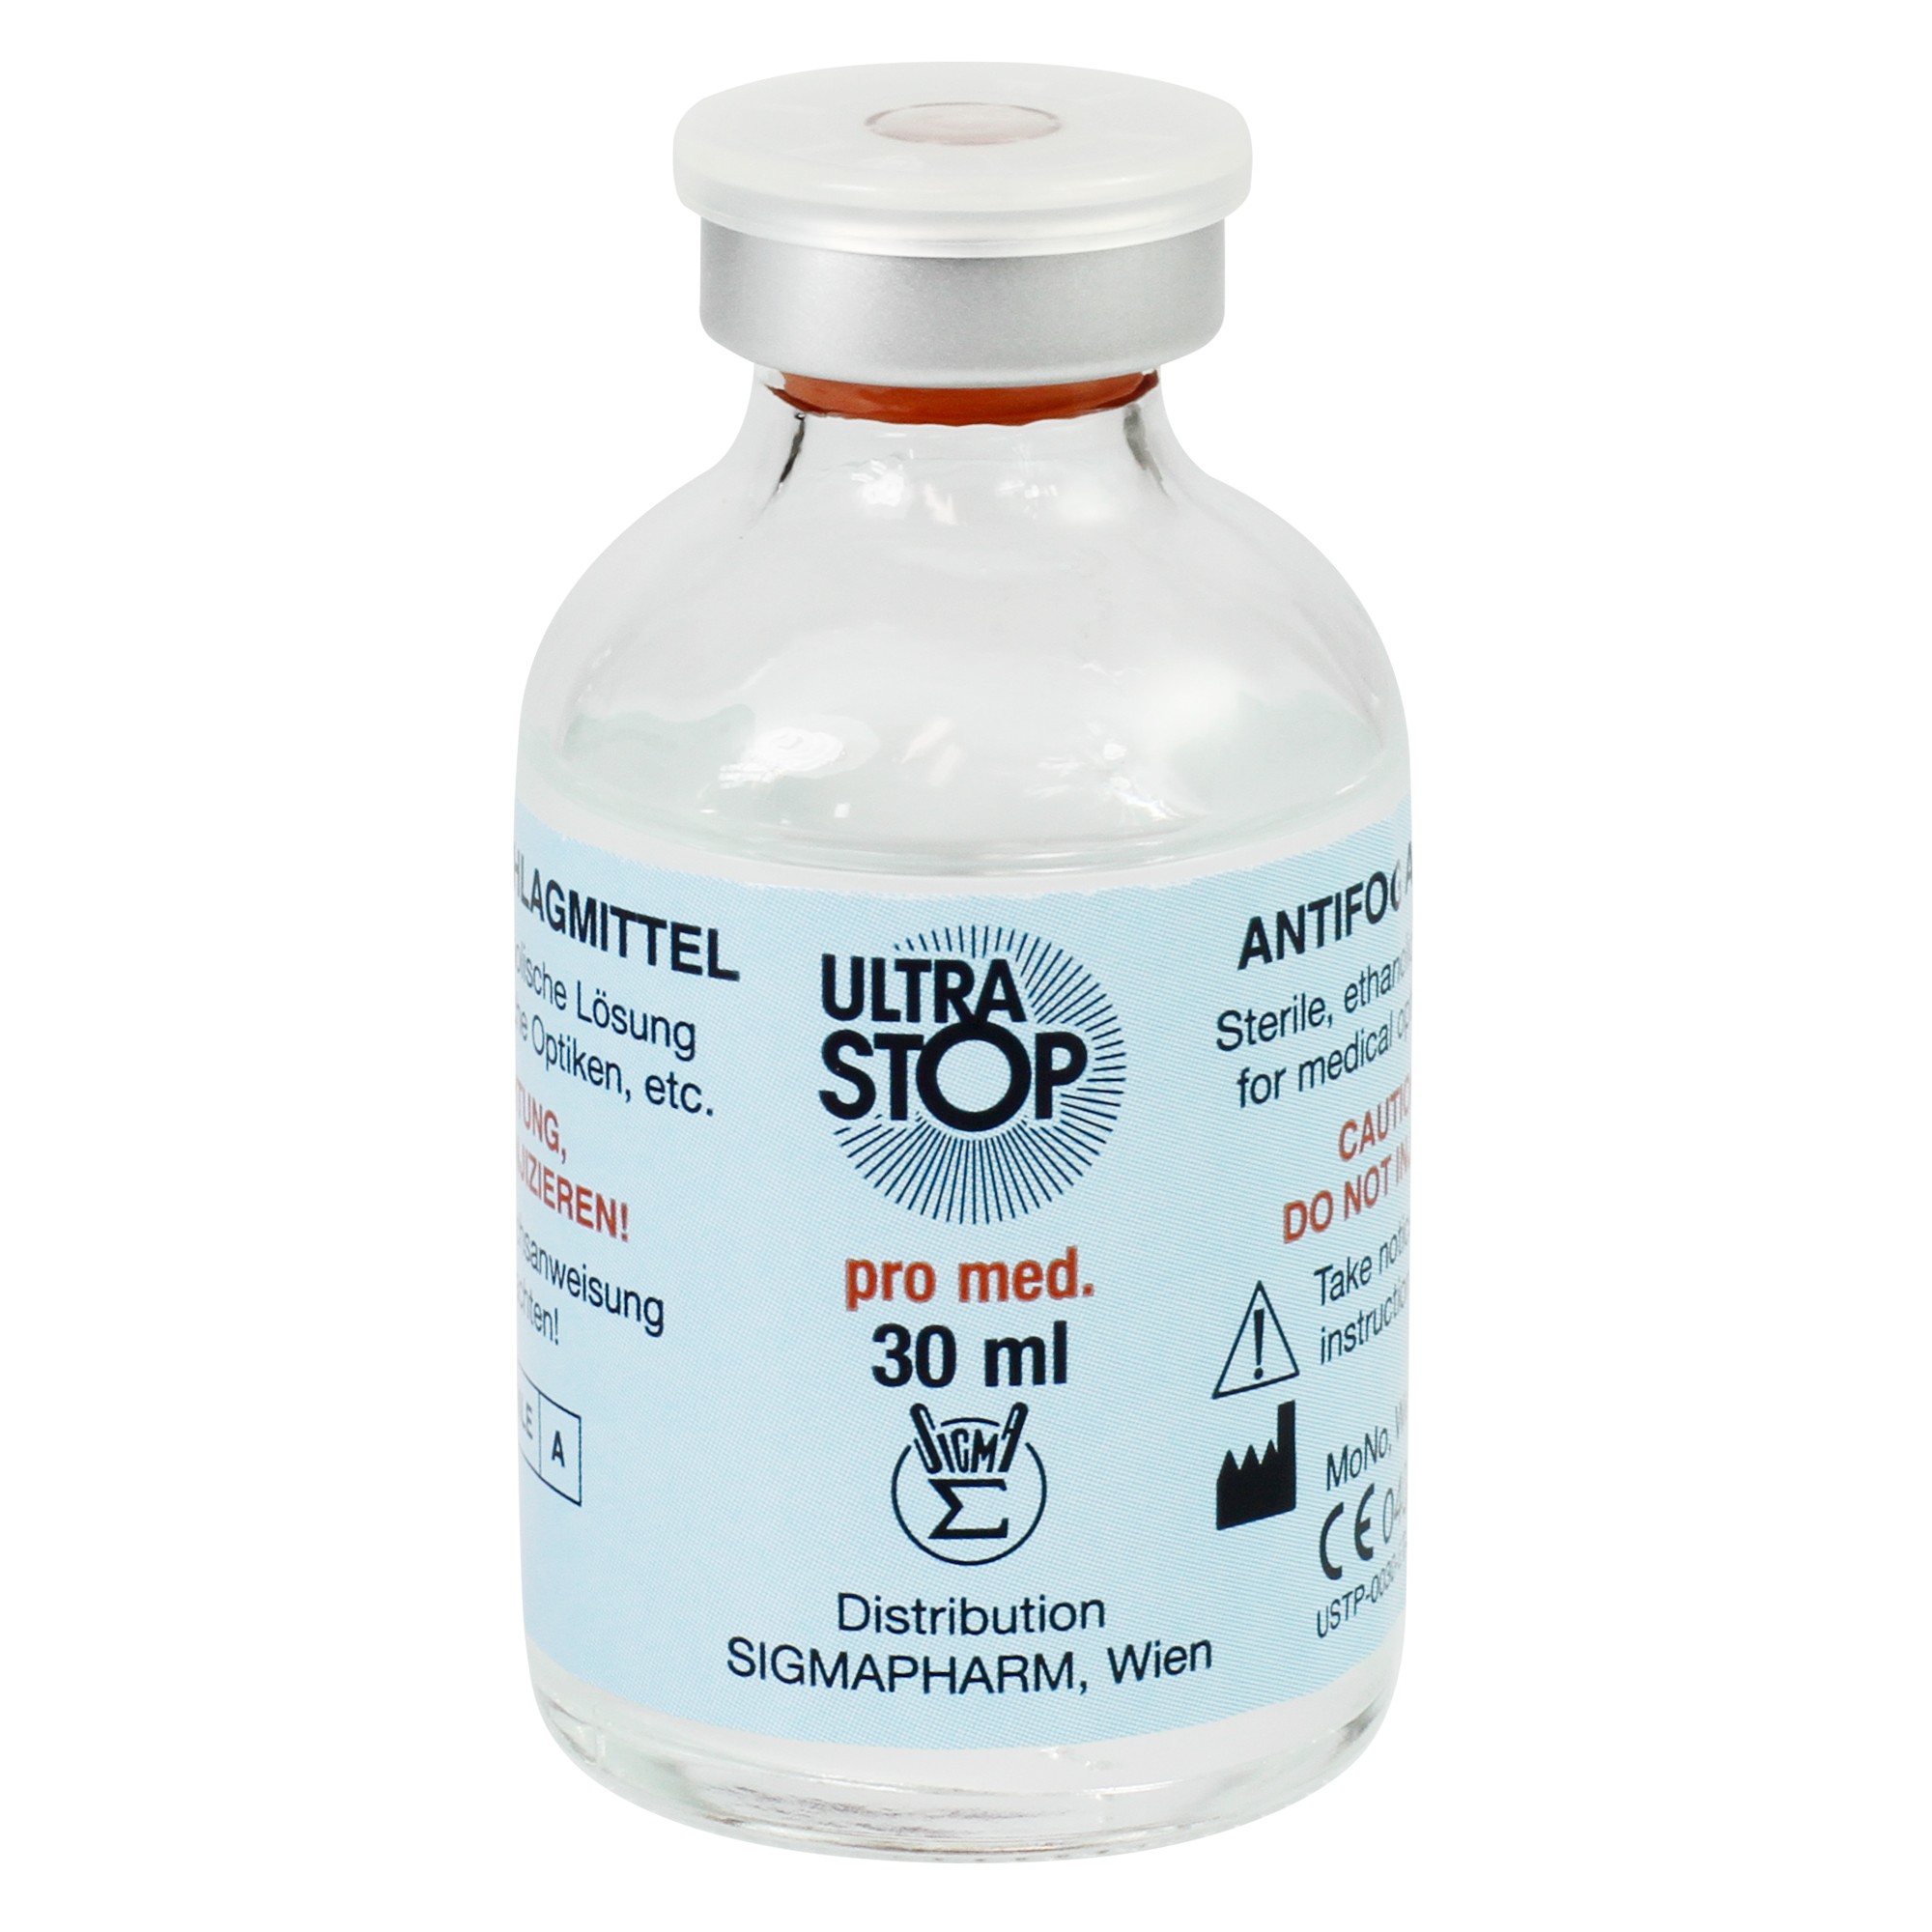 Antibeschlagmittel ULTRASTOP pro med. 30 ml steril